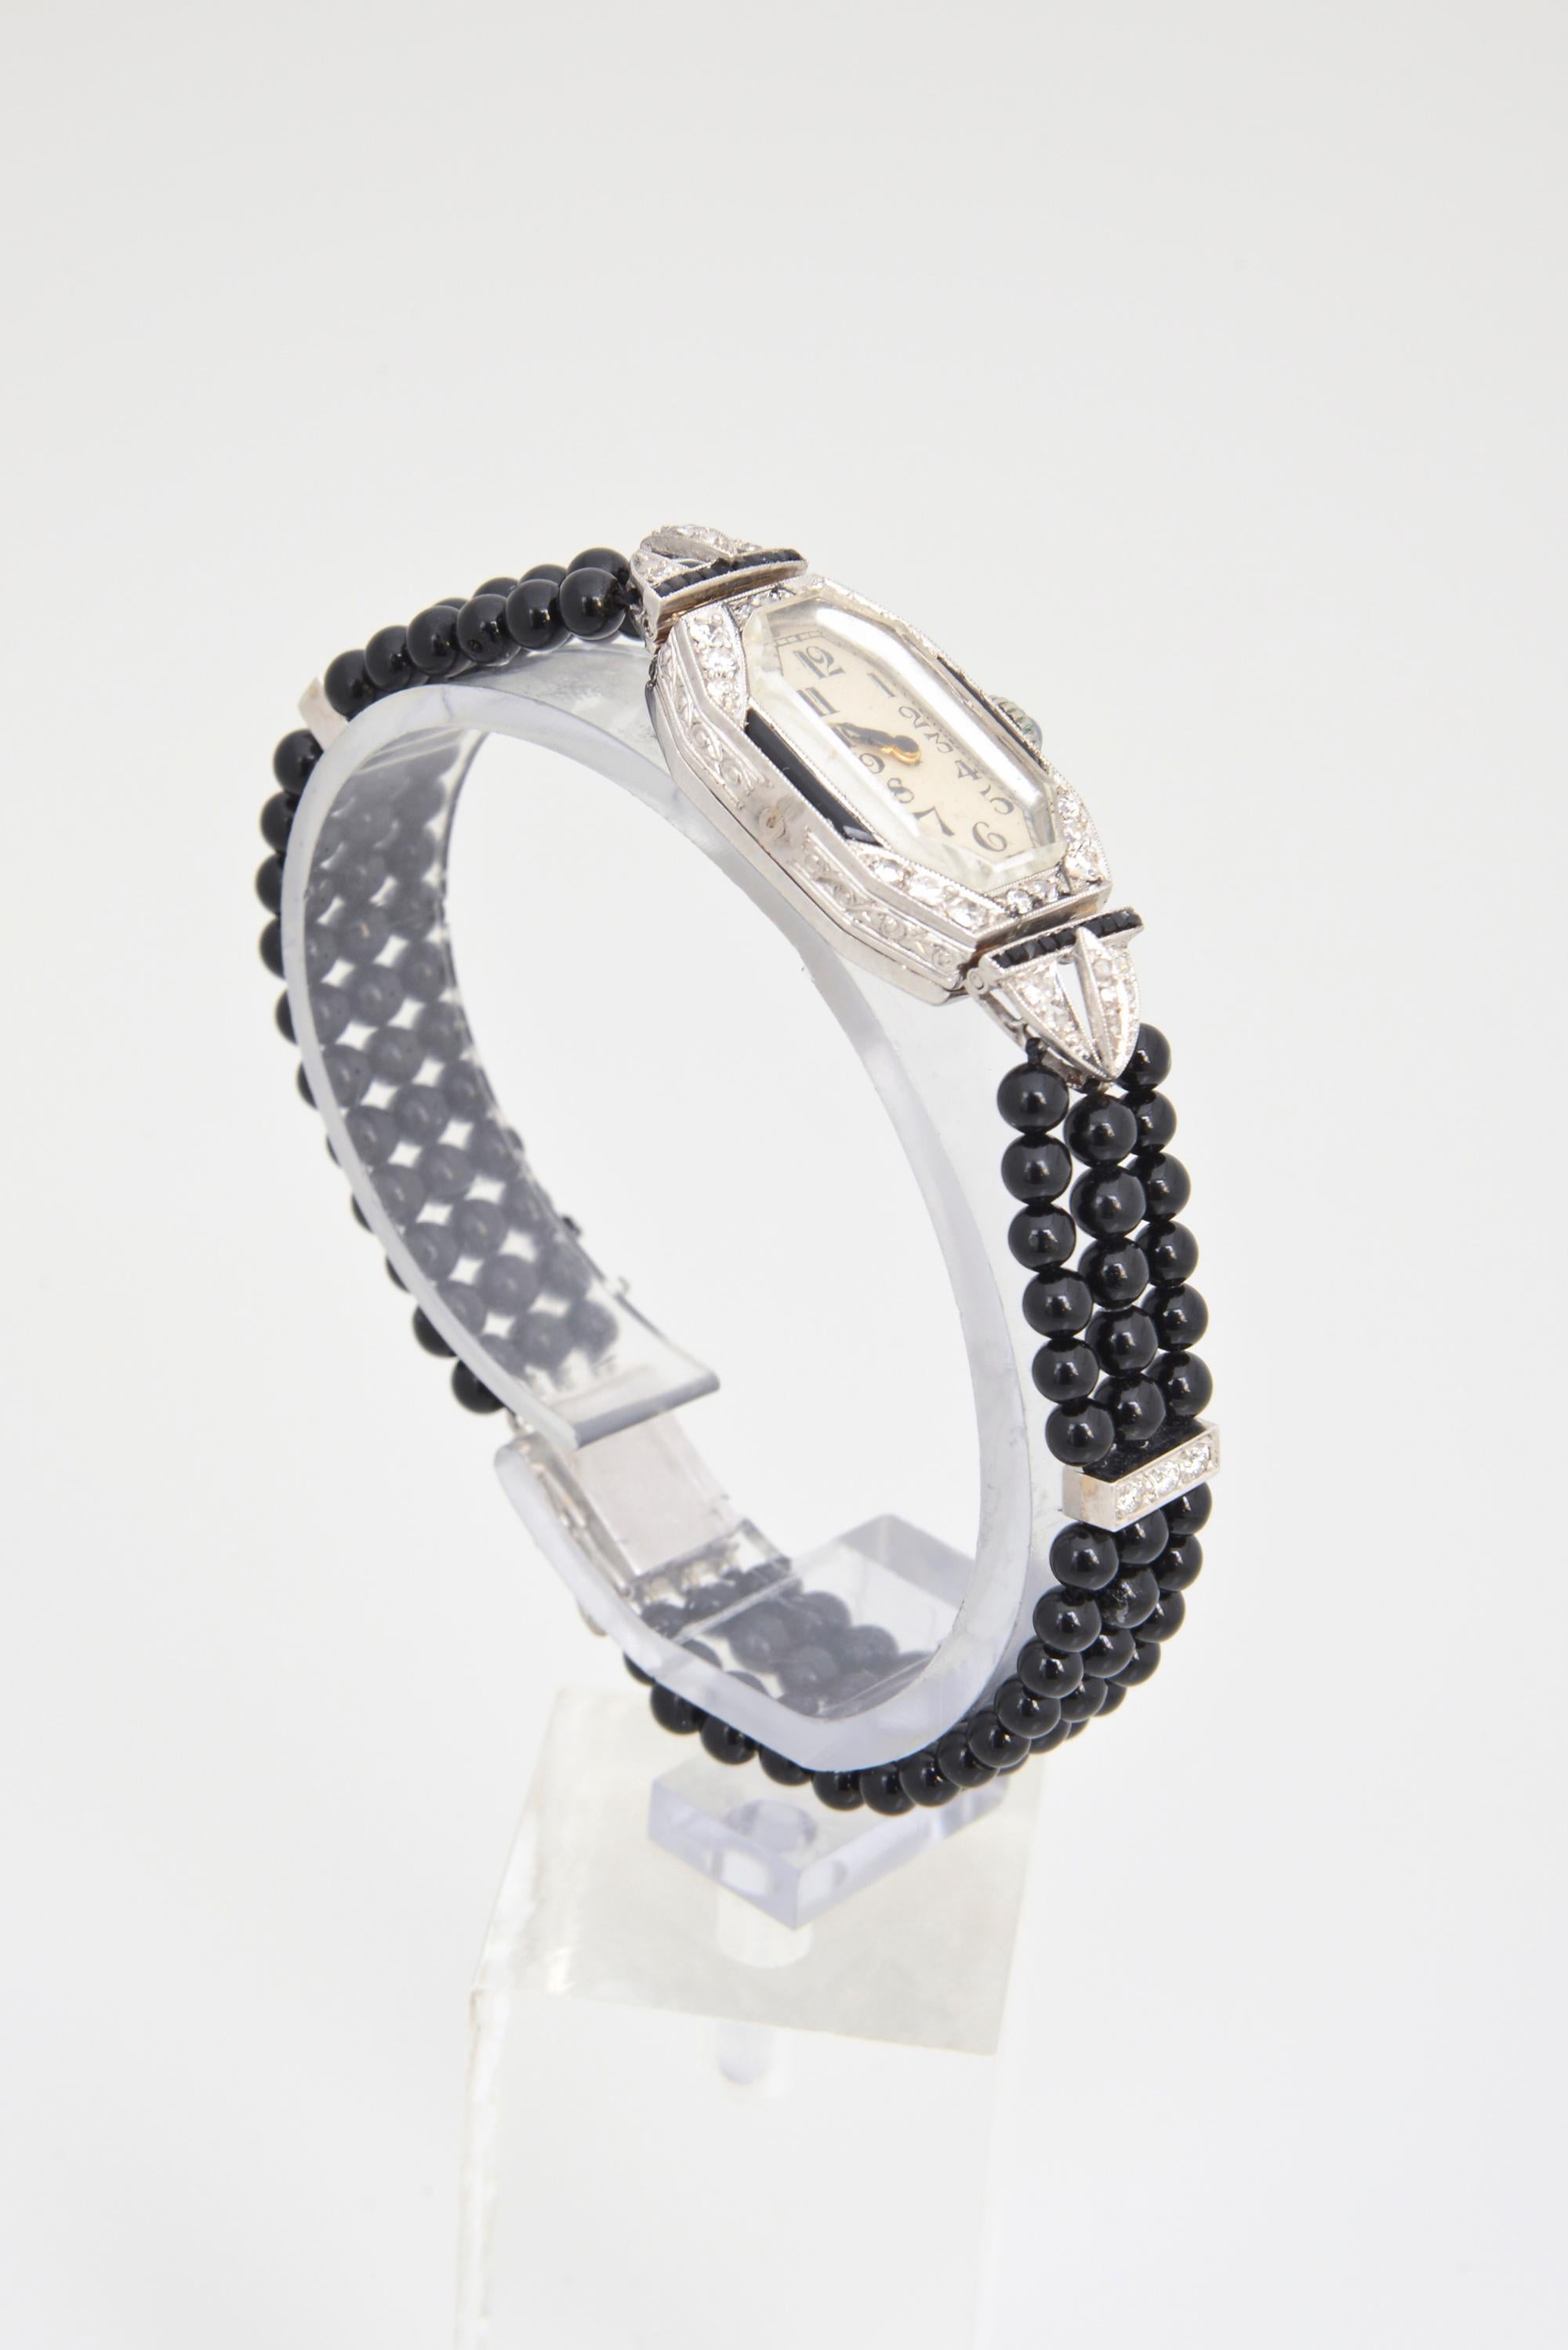 Uhrenkopf aus Diamanten und Onyx im Art-Deco-Stil, eingefasst in ein neueres, dreifach geflochtenes Band aus Onyxperlen mit Diamantabstandshaltern. Der Uhrenkopf ist aus Platin. Abstandhalter und Schließe sind aus 14 Karat Weißgold. Handgravur auf